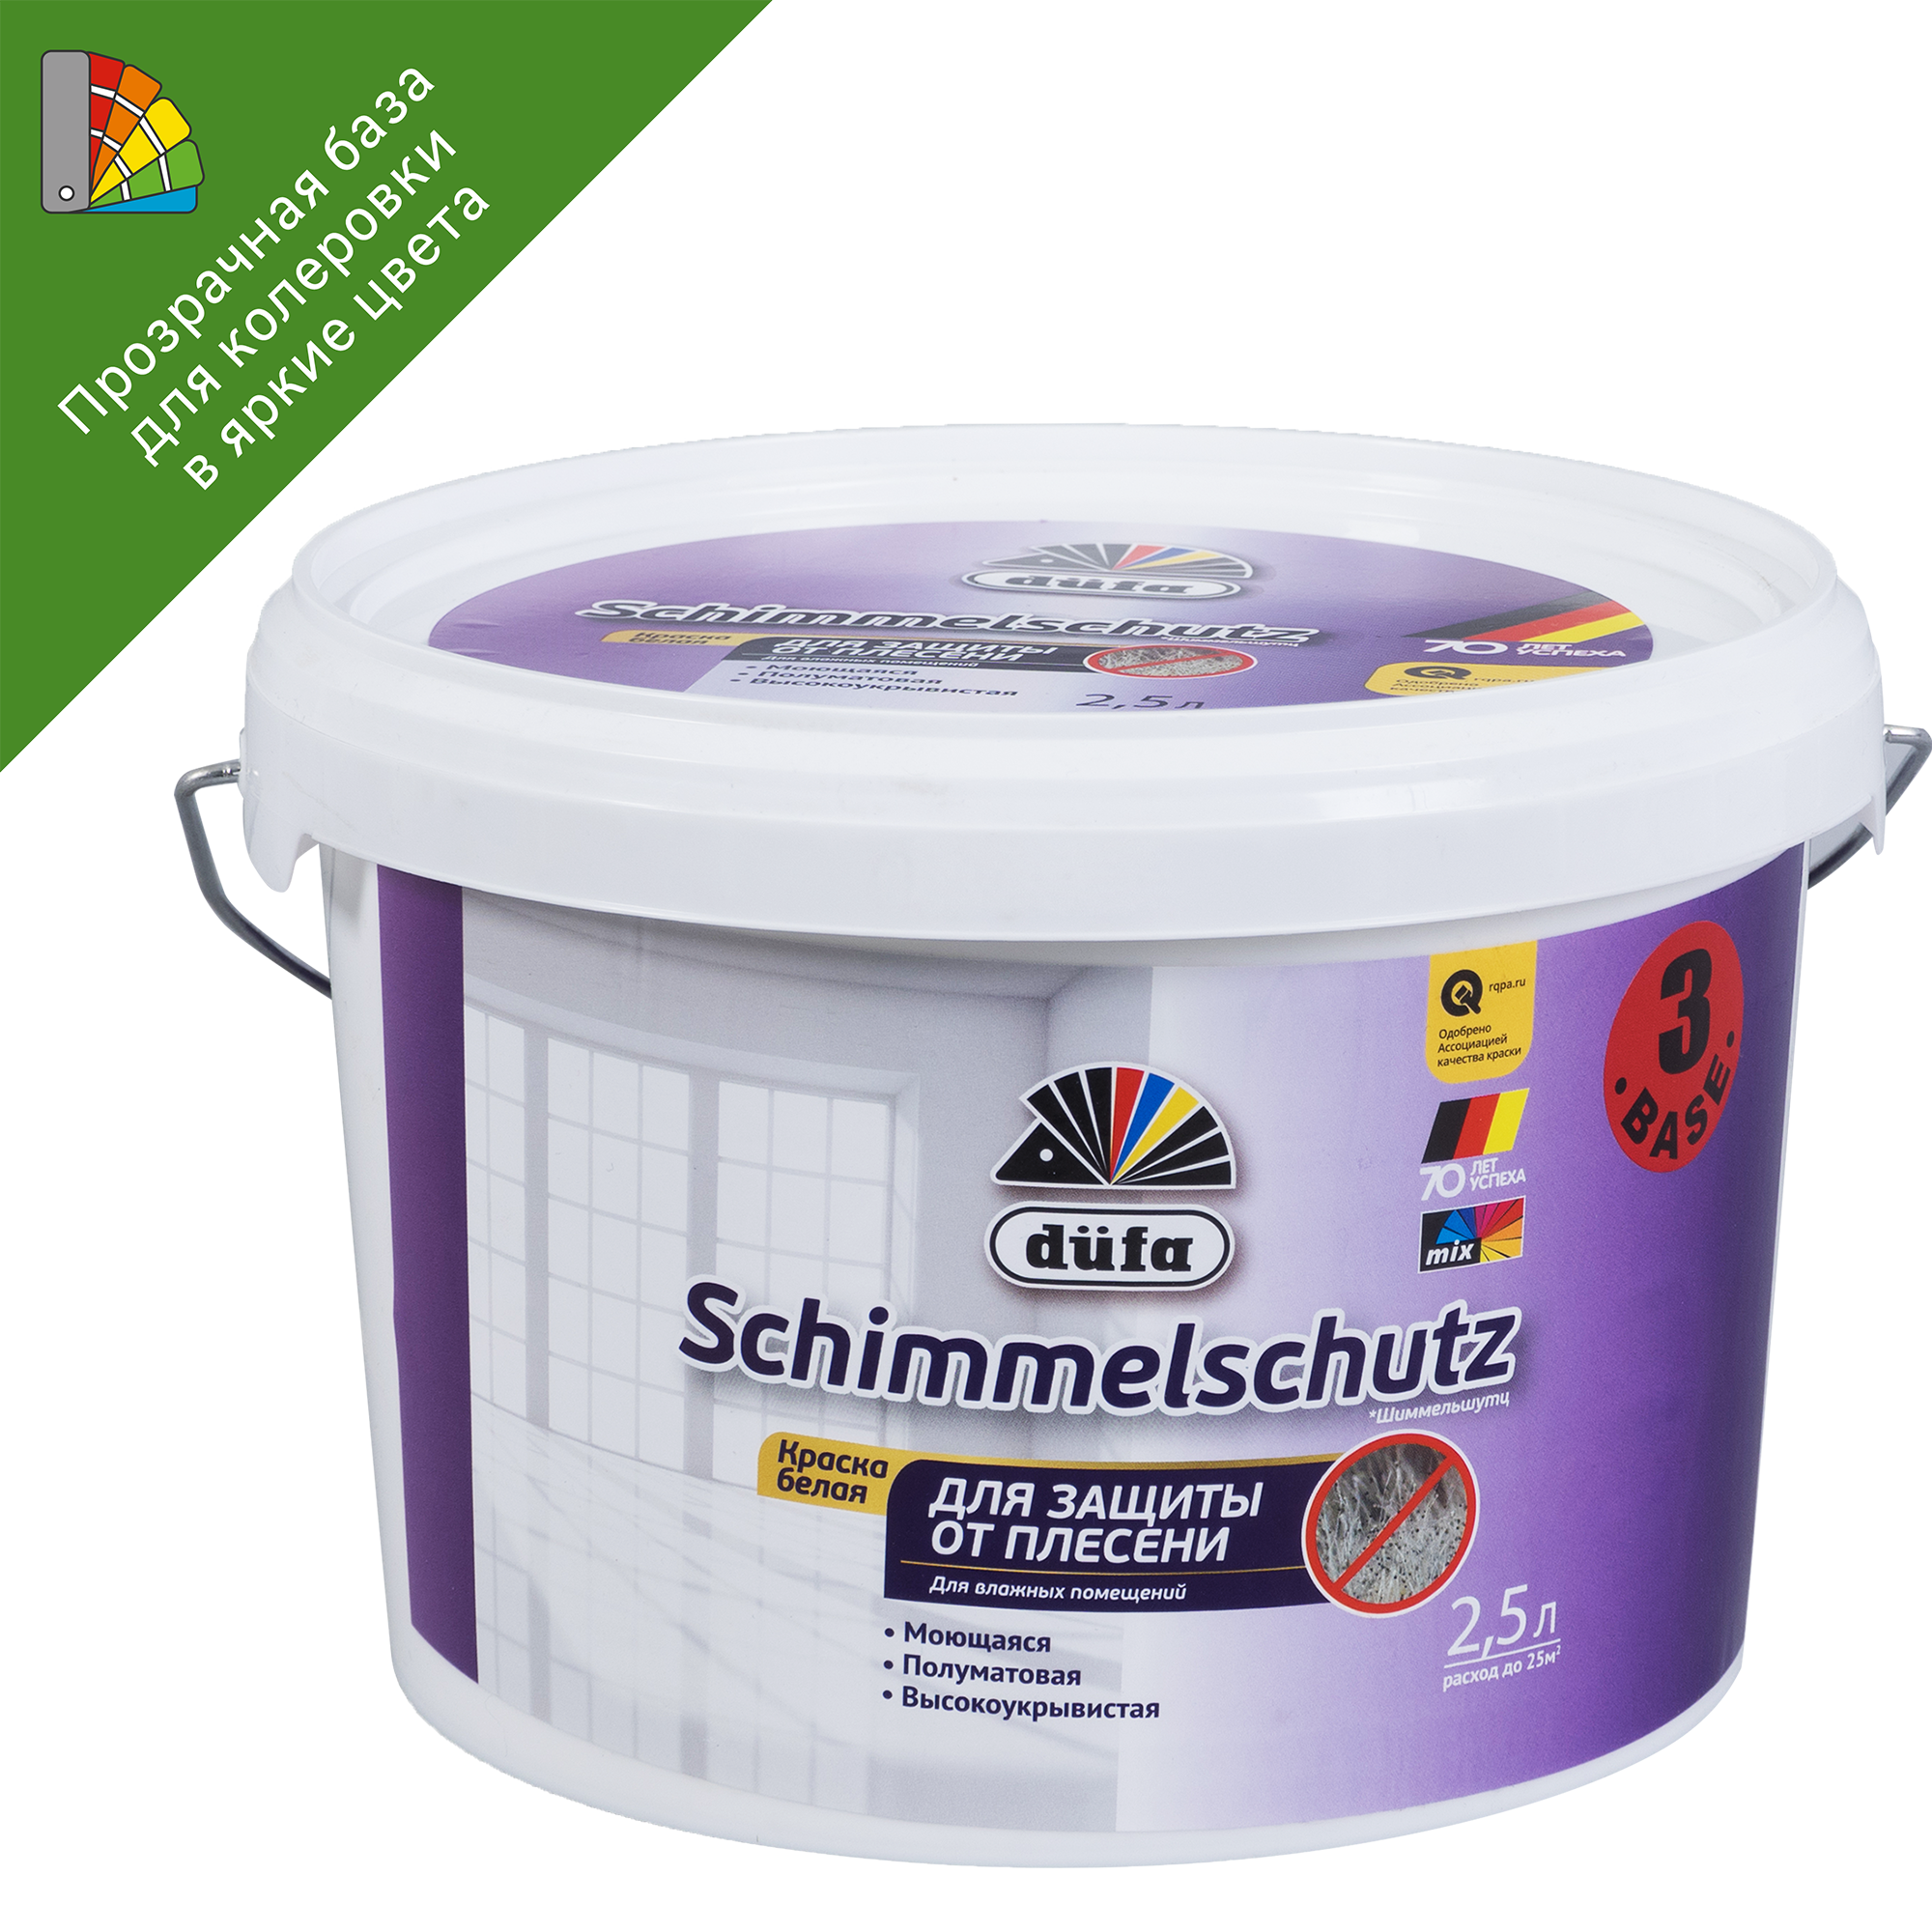 82141650 Краска для колеровки для стен и потолков Schimmelchutz прозрачная база 3 2.5 л STLM-0020249 DUFA